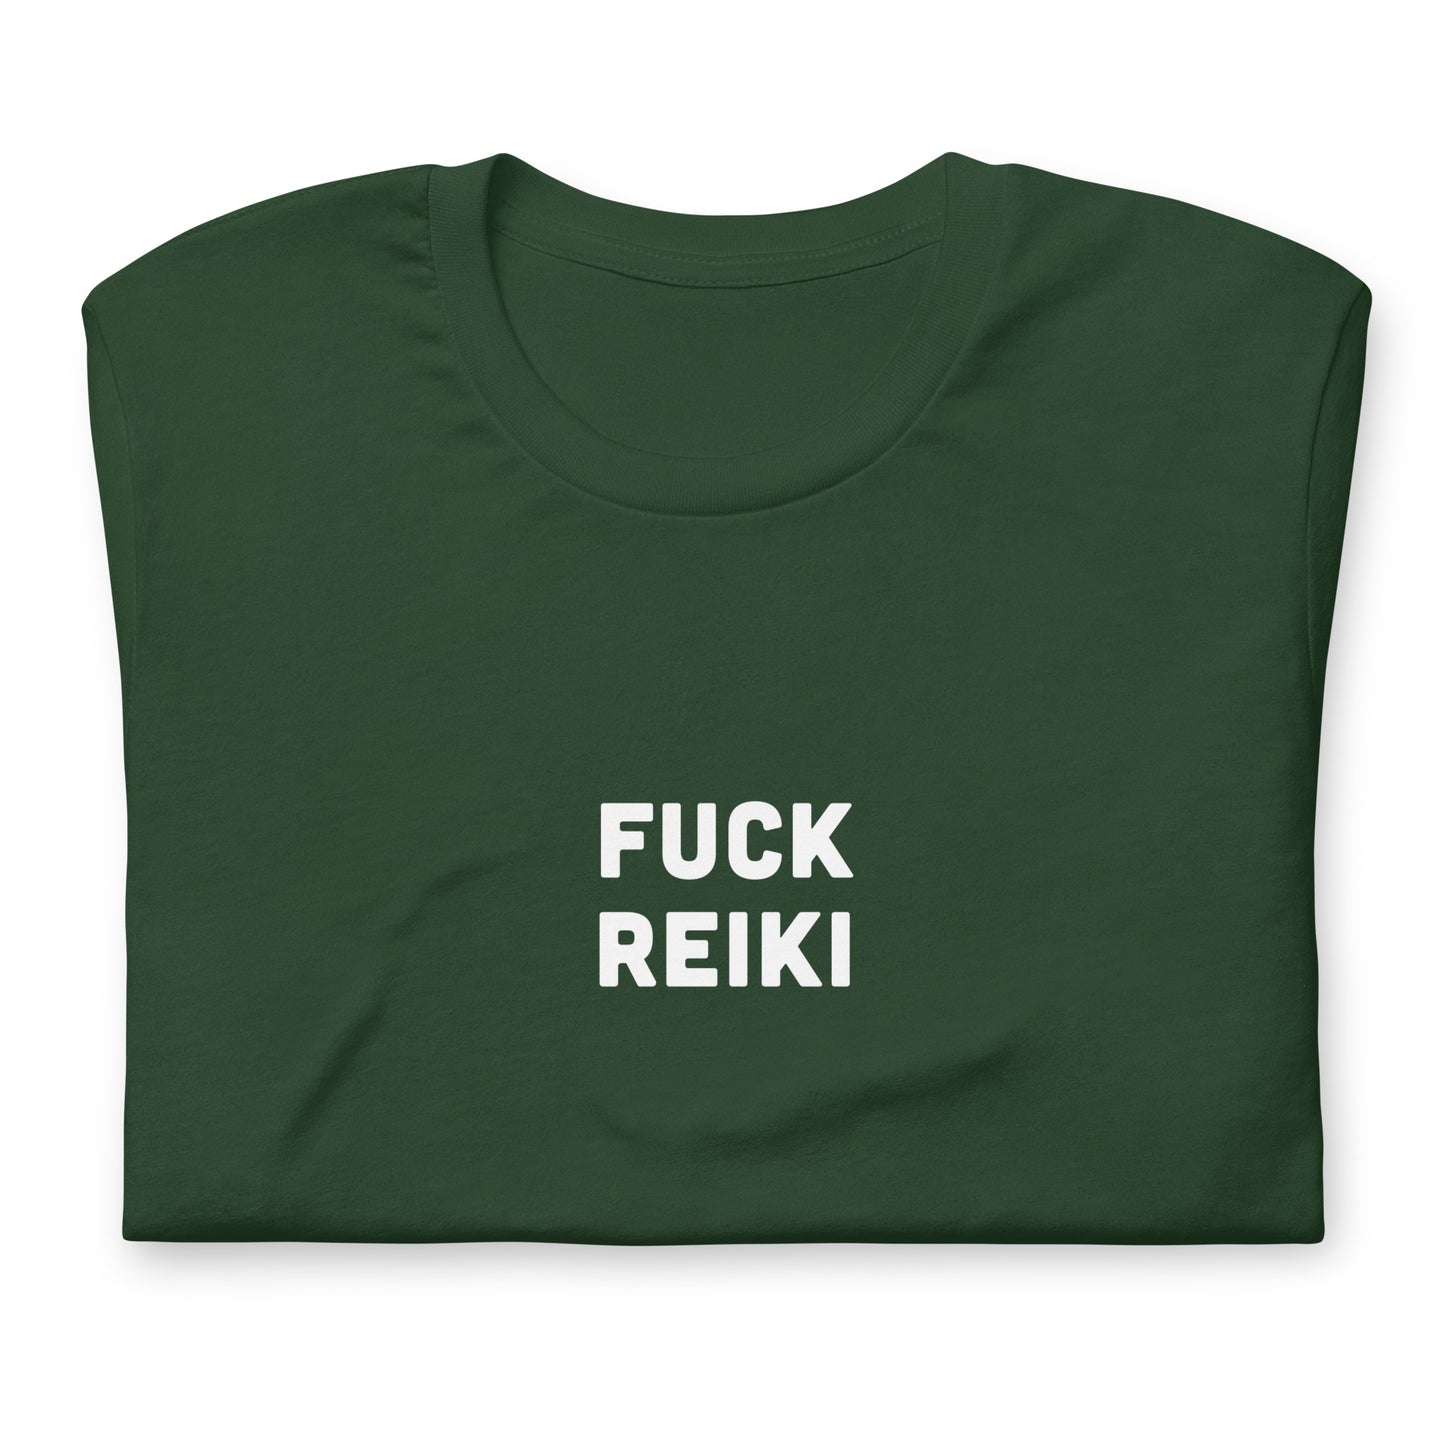 Fuck Reiki T-Shirt Size XL Color Black